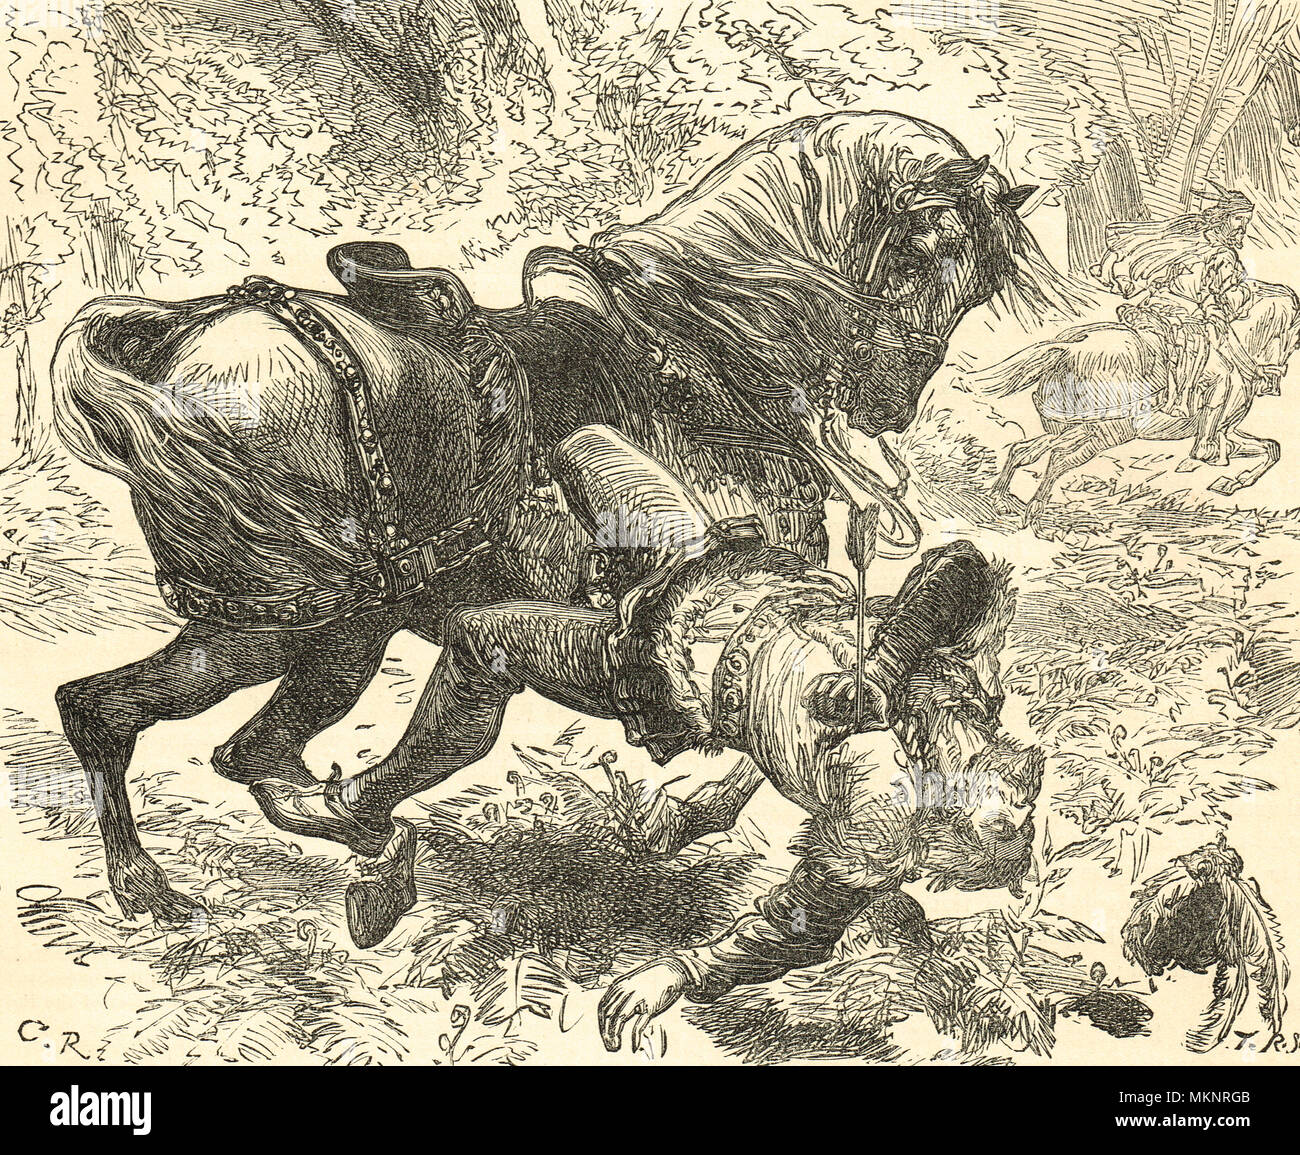 La mort de Guillaume Le Roux, New Forest, 2 août 1100, frappé par une flèche à la chasse, dans des circonstances qui demeurent obscures, avec des soupçons de meurtre non prouvée Banque D'Images